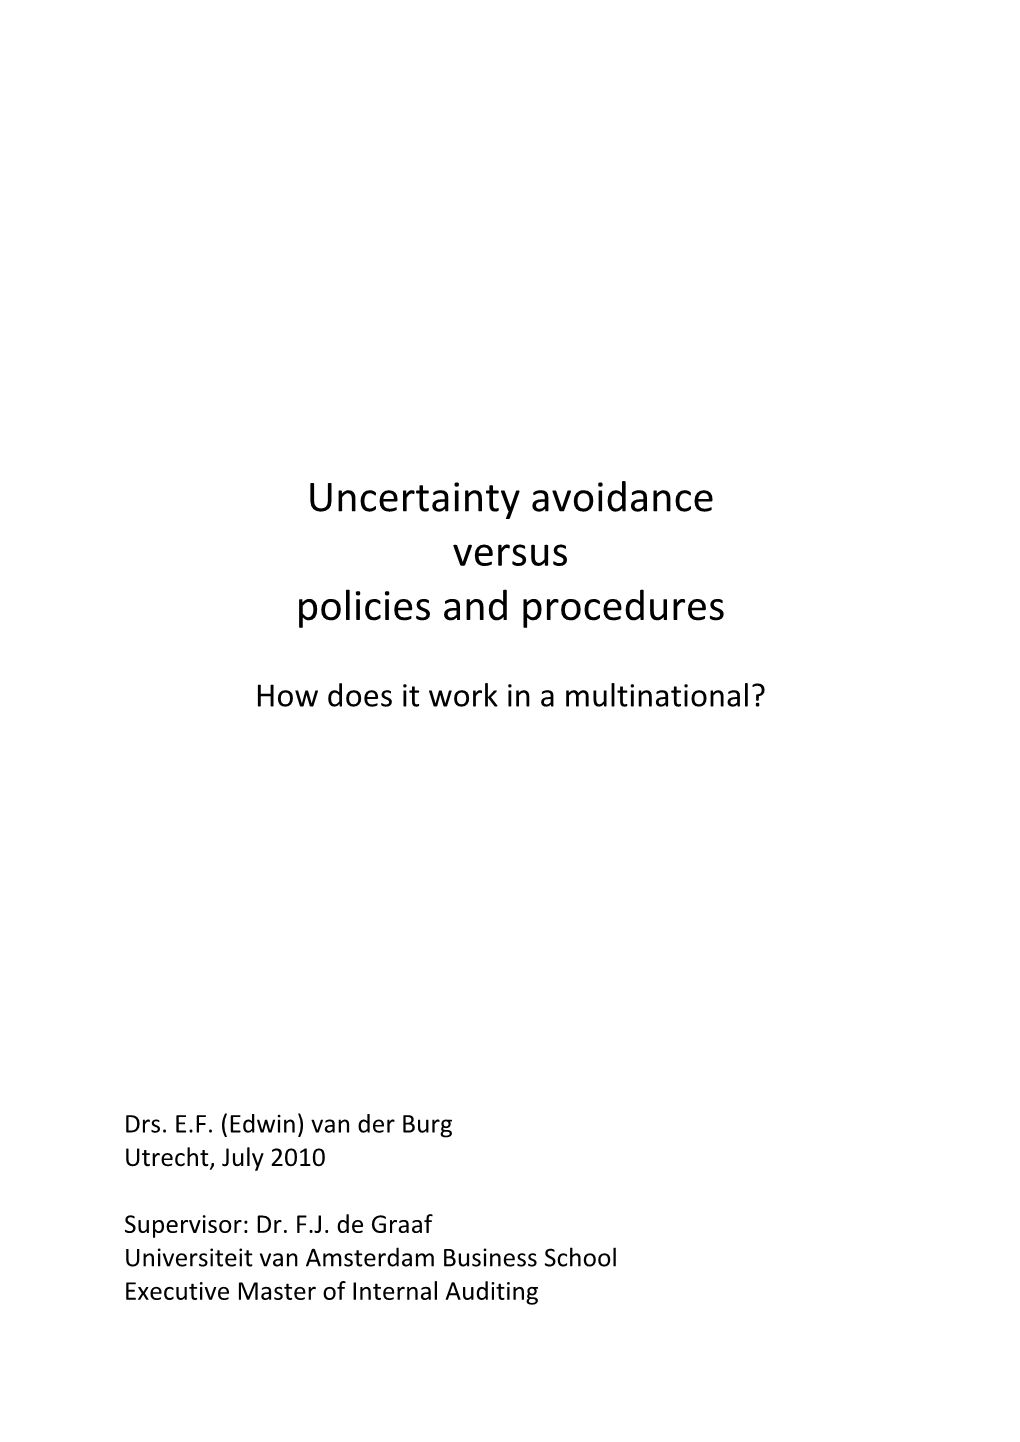 Uncertainty Avoidance Versus Policies and Procedures